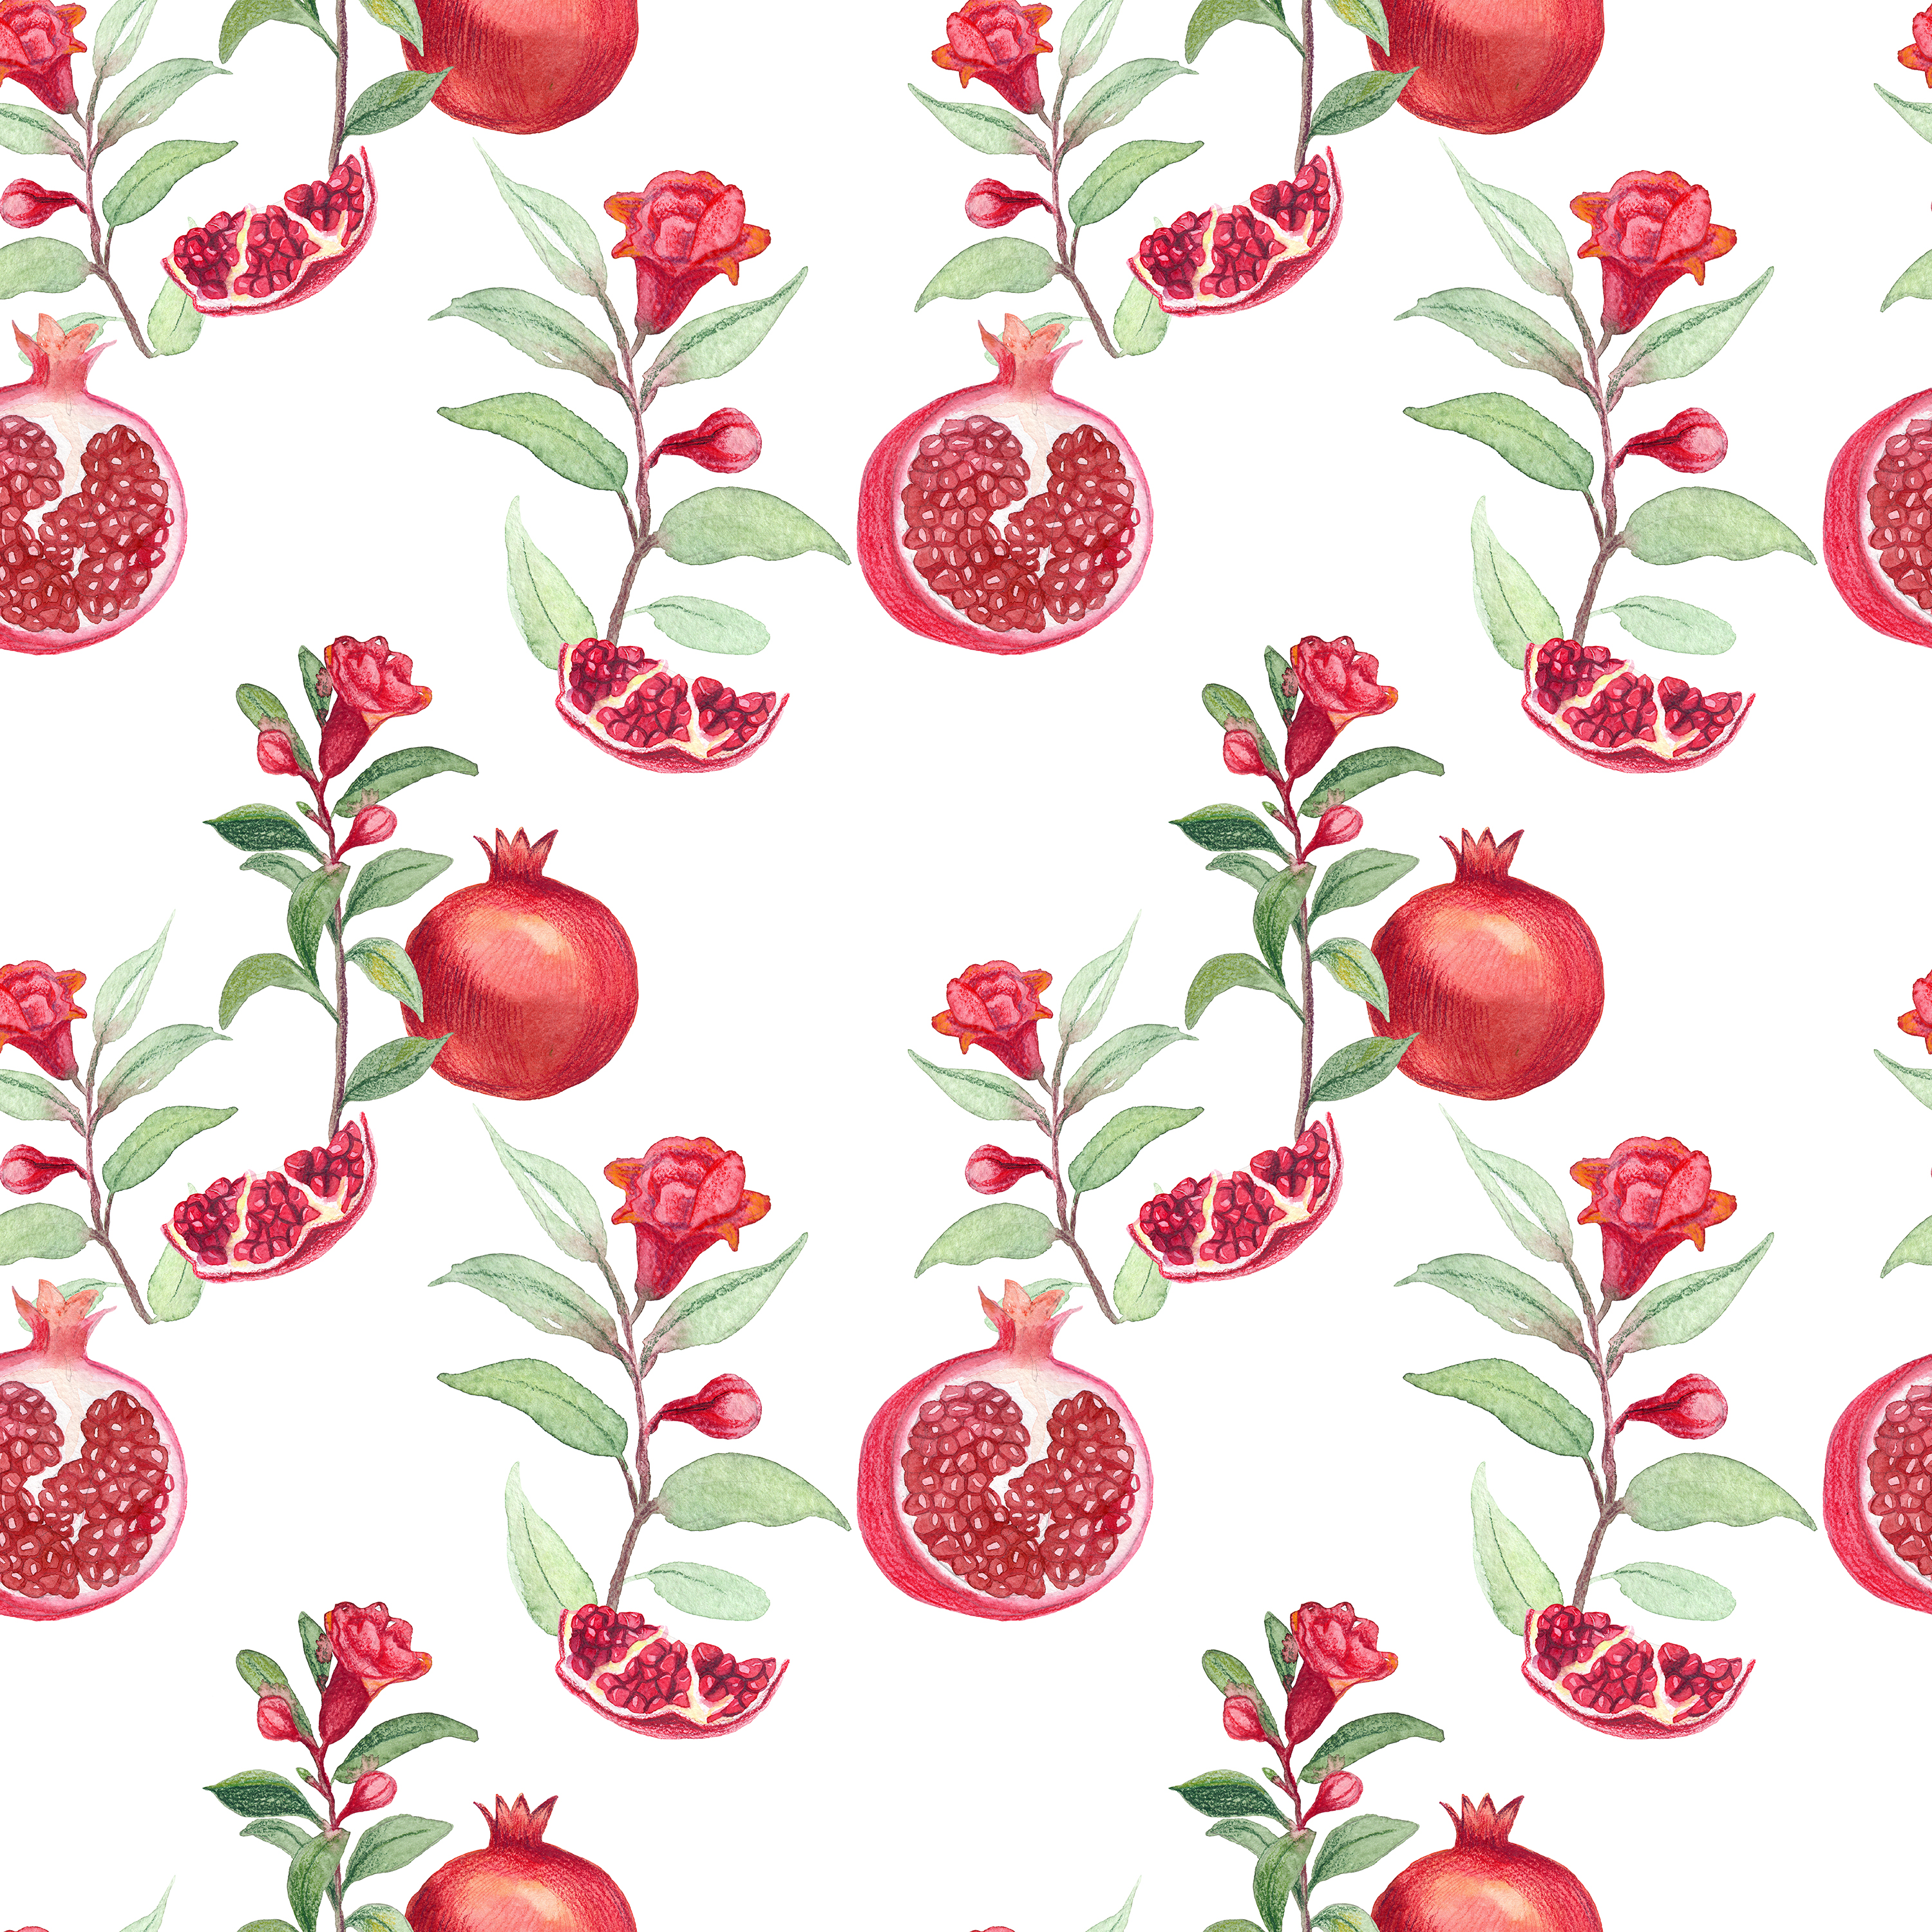 Pomegranate white x2 pattern